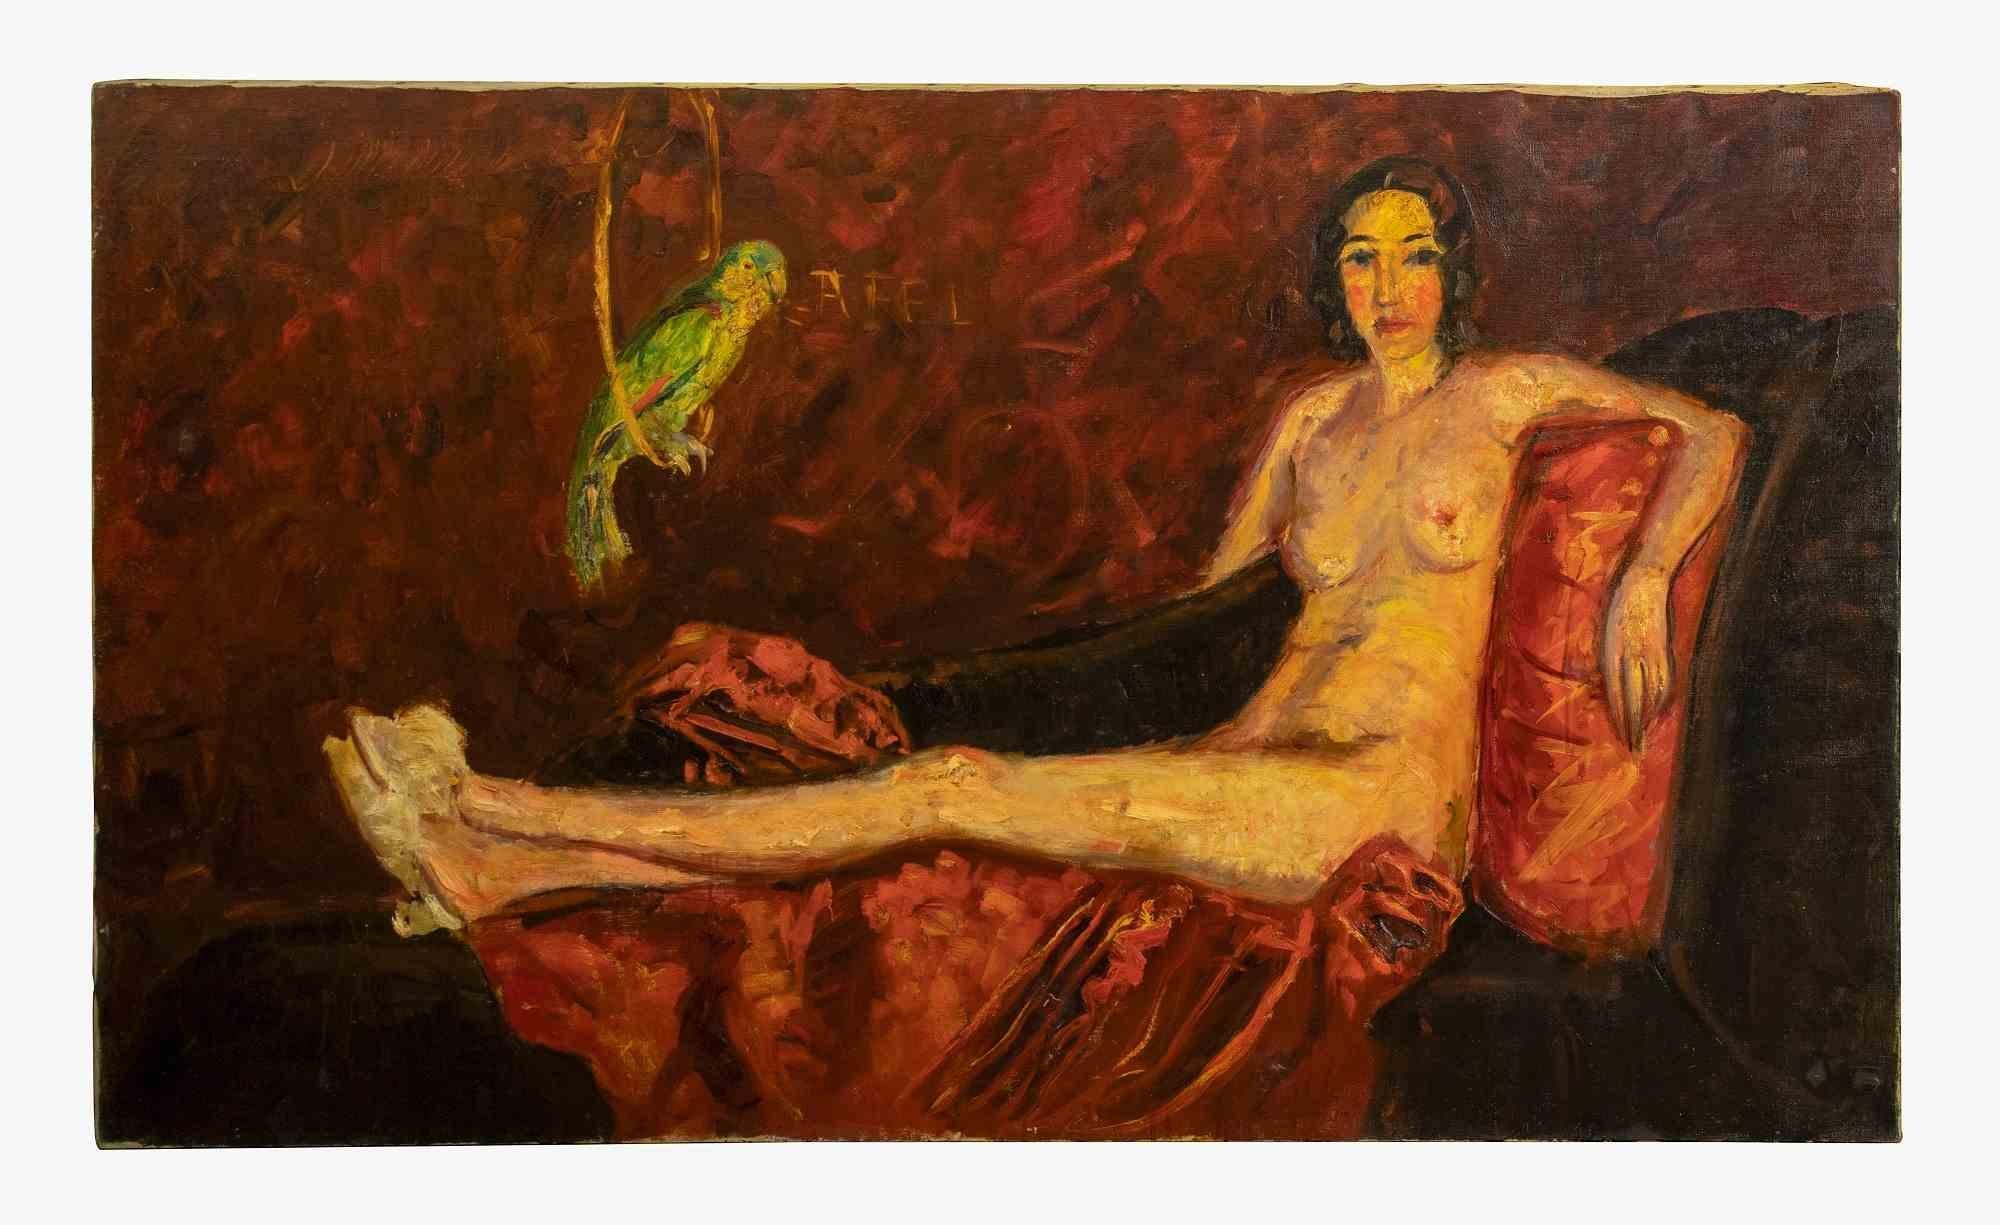 Reclined Nude with Parrot ist ein Original-Kunstwerk des italienischen Künstlers  Antonio Feltrinelli in den 1930er Jahren.

Öl auf Leinwand

Schönes und repräsentatives Kunstwerk, das einen liegenden weiblichen Akt darstellt.

Antonio Feltrinelli